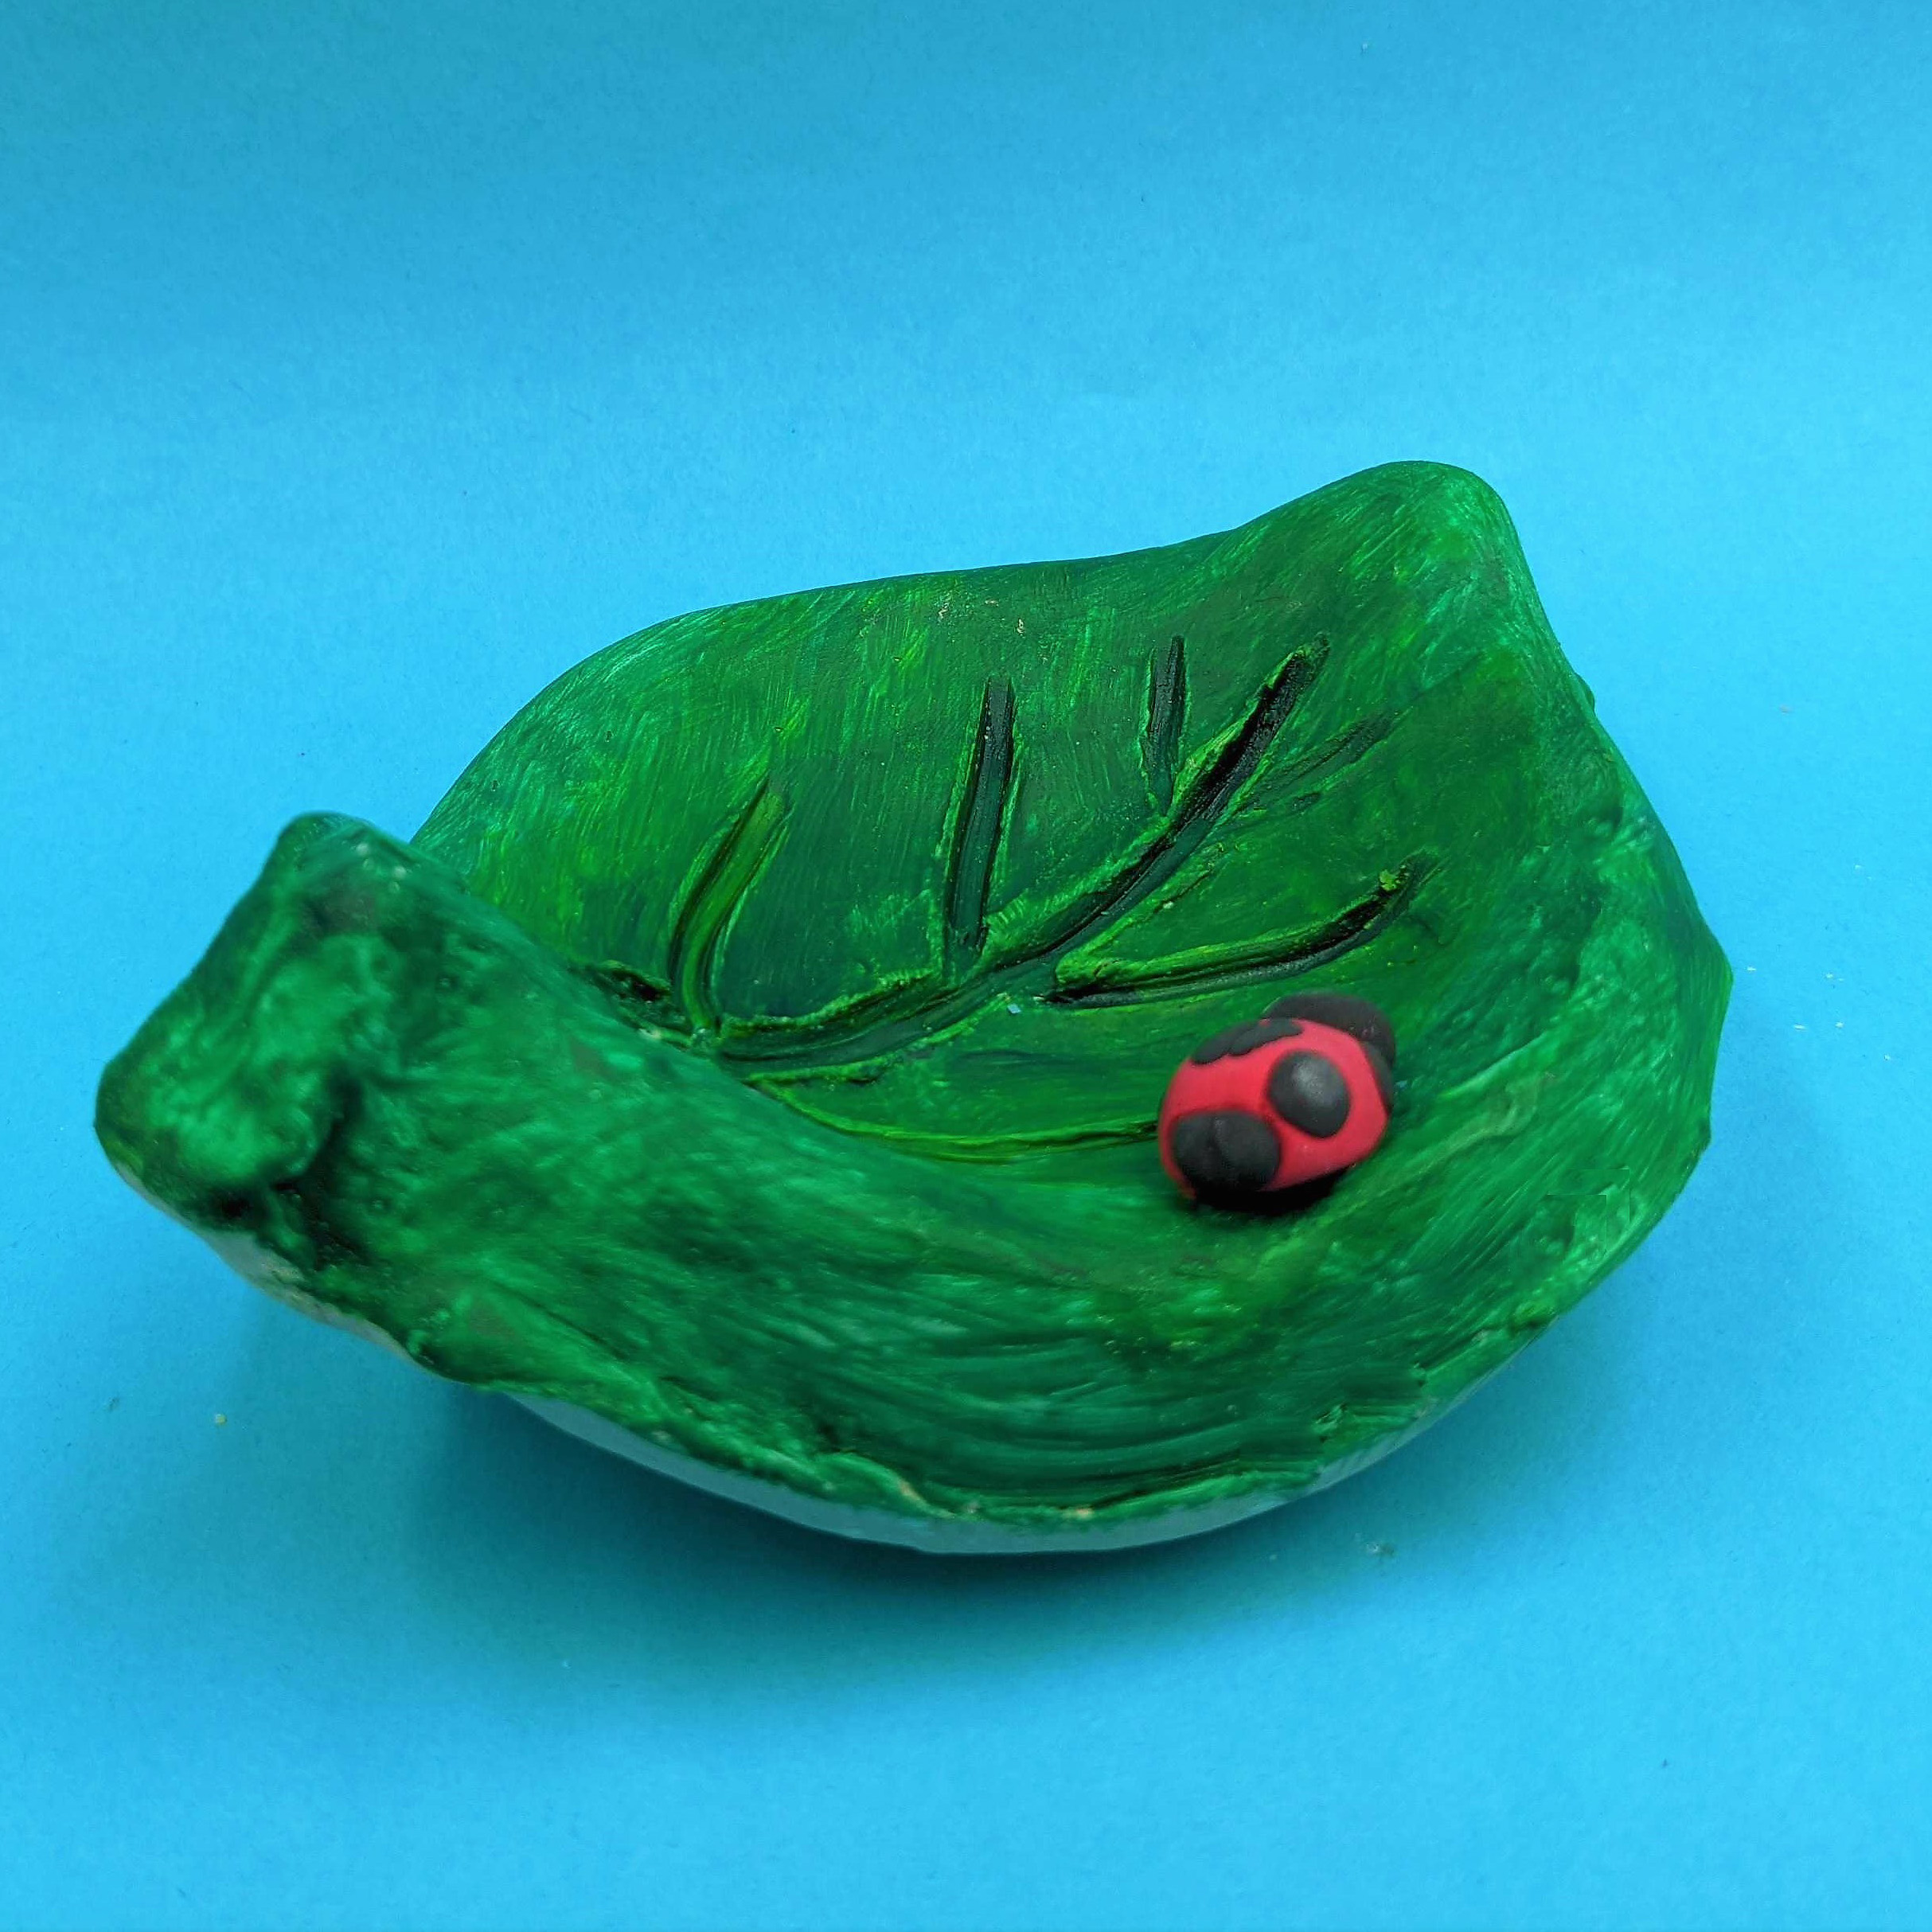 Kidcreate Studio, Leaf bowl Art Project